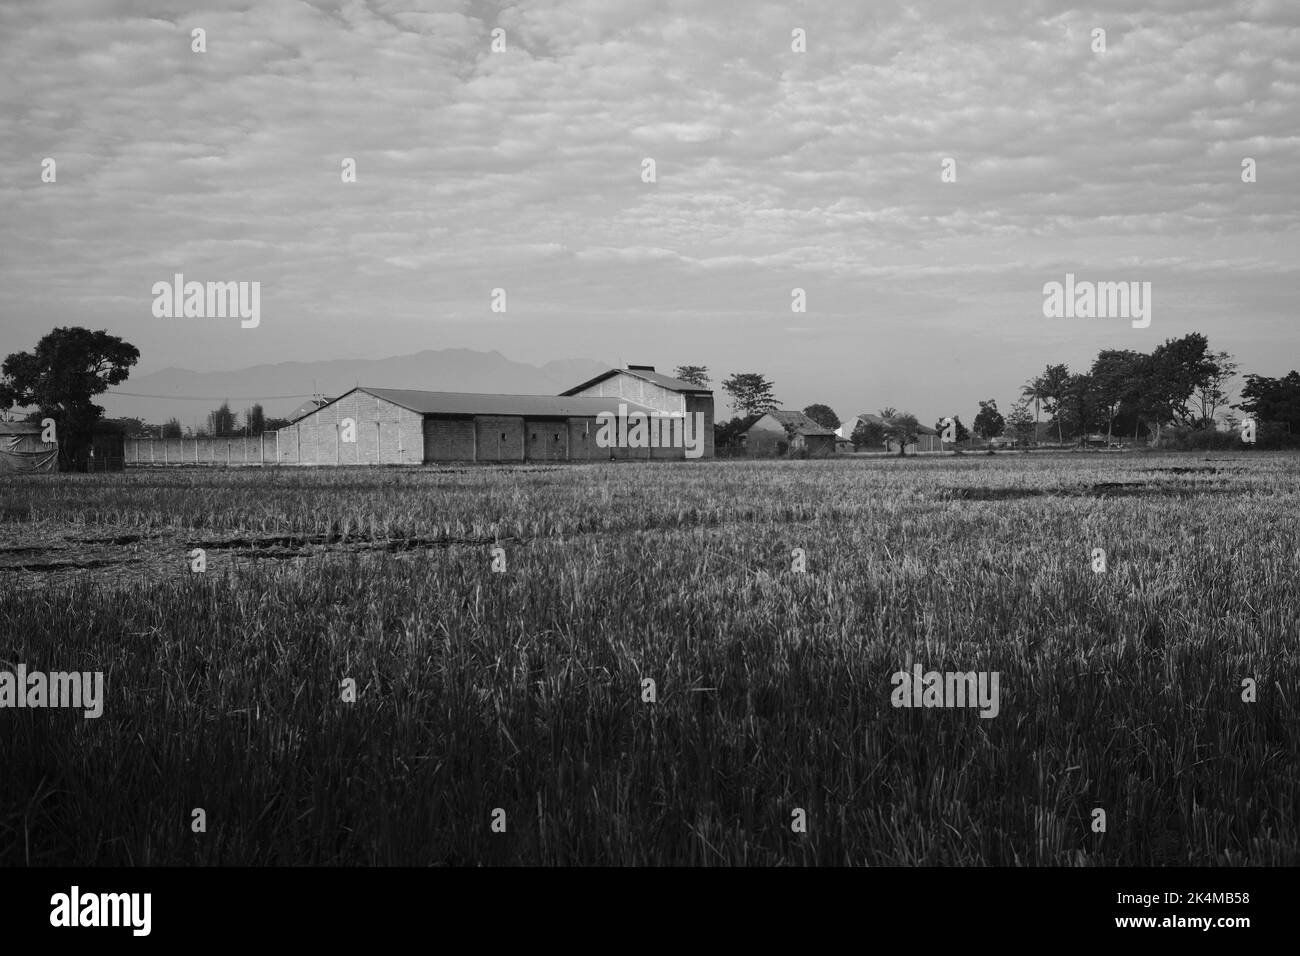 Entrepôt de riz, stockage et séchage du riz, champ de riz devant, photo monochrome, dans la région de Cikancung - Indonésie Banque D'Images